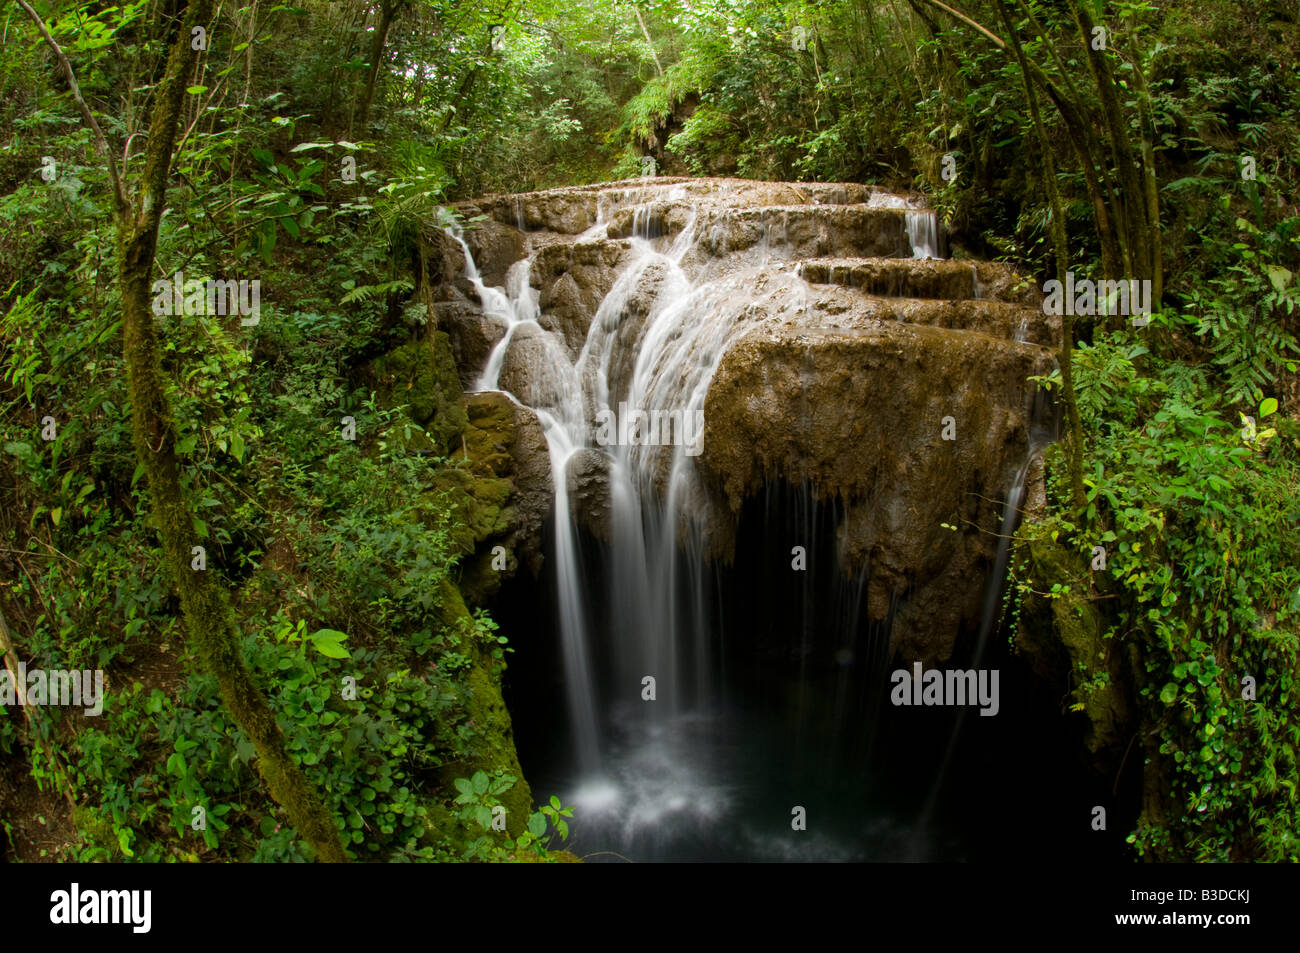 Con cascata nella foresta pluviale tropicale nello stato del Mato Grosso do Sul in Brasile Foto Stock